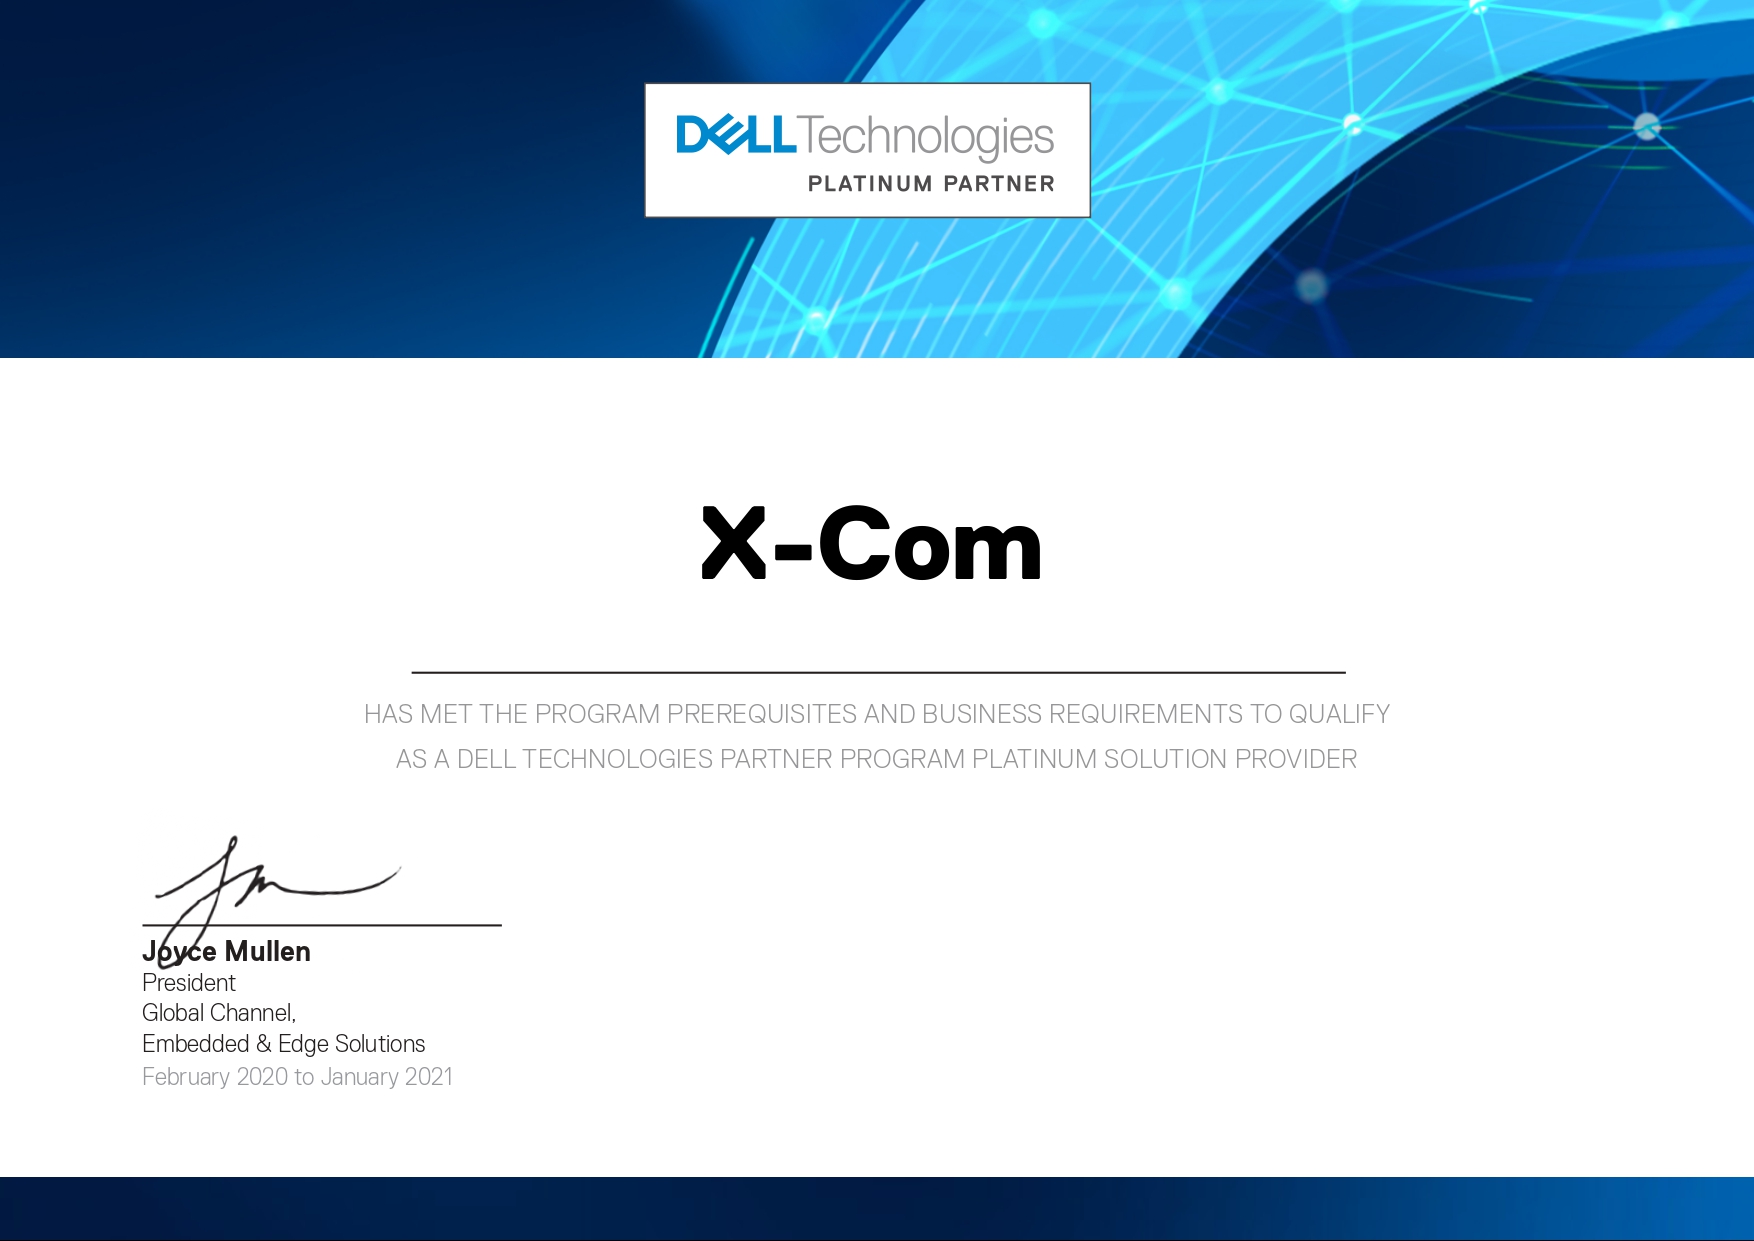 X-Com подтвердила статус Платинового партнера Dell Technologies